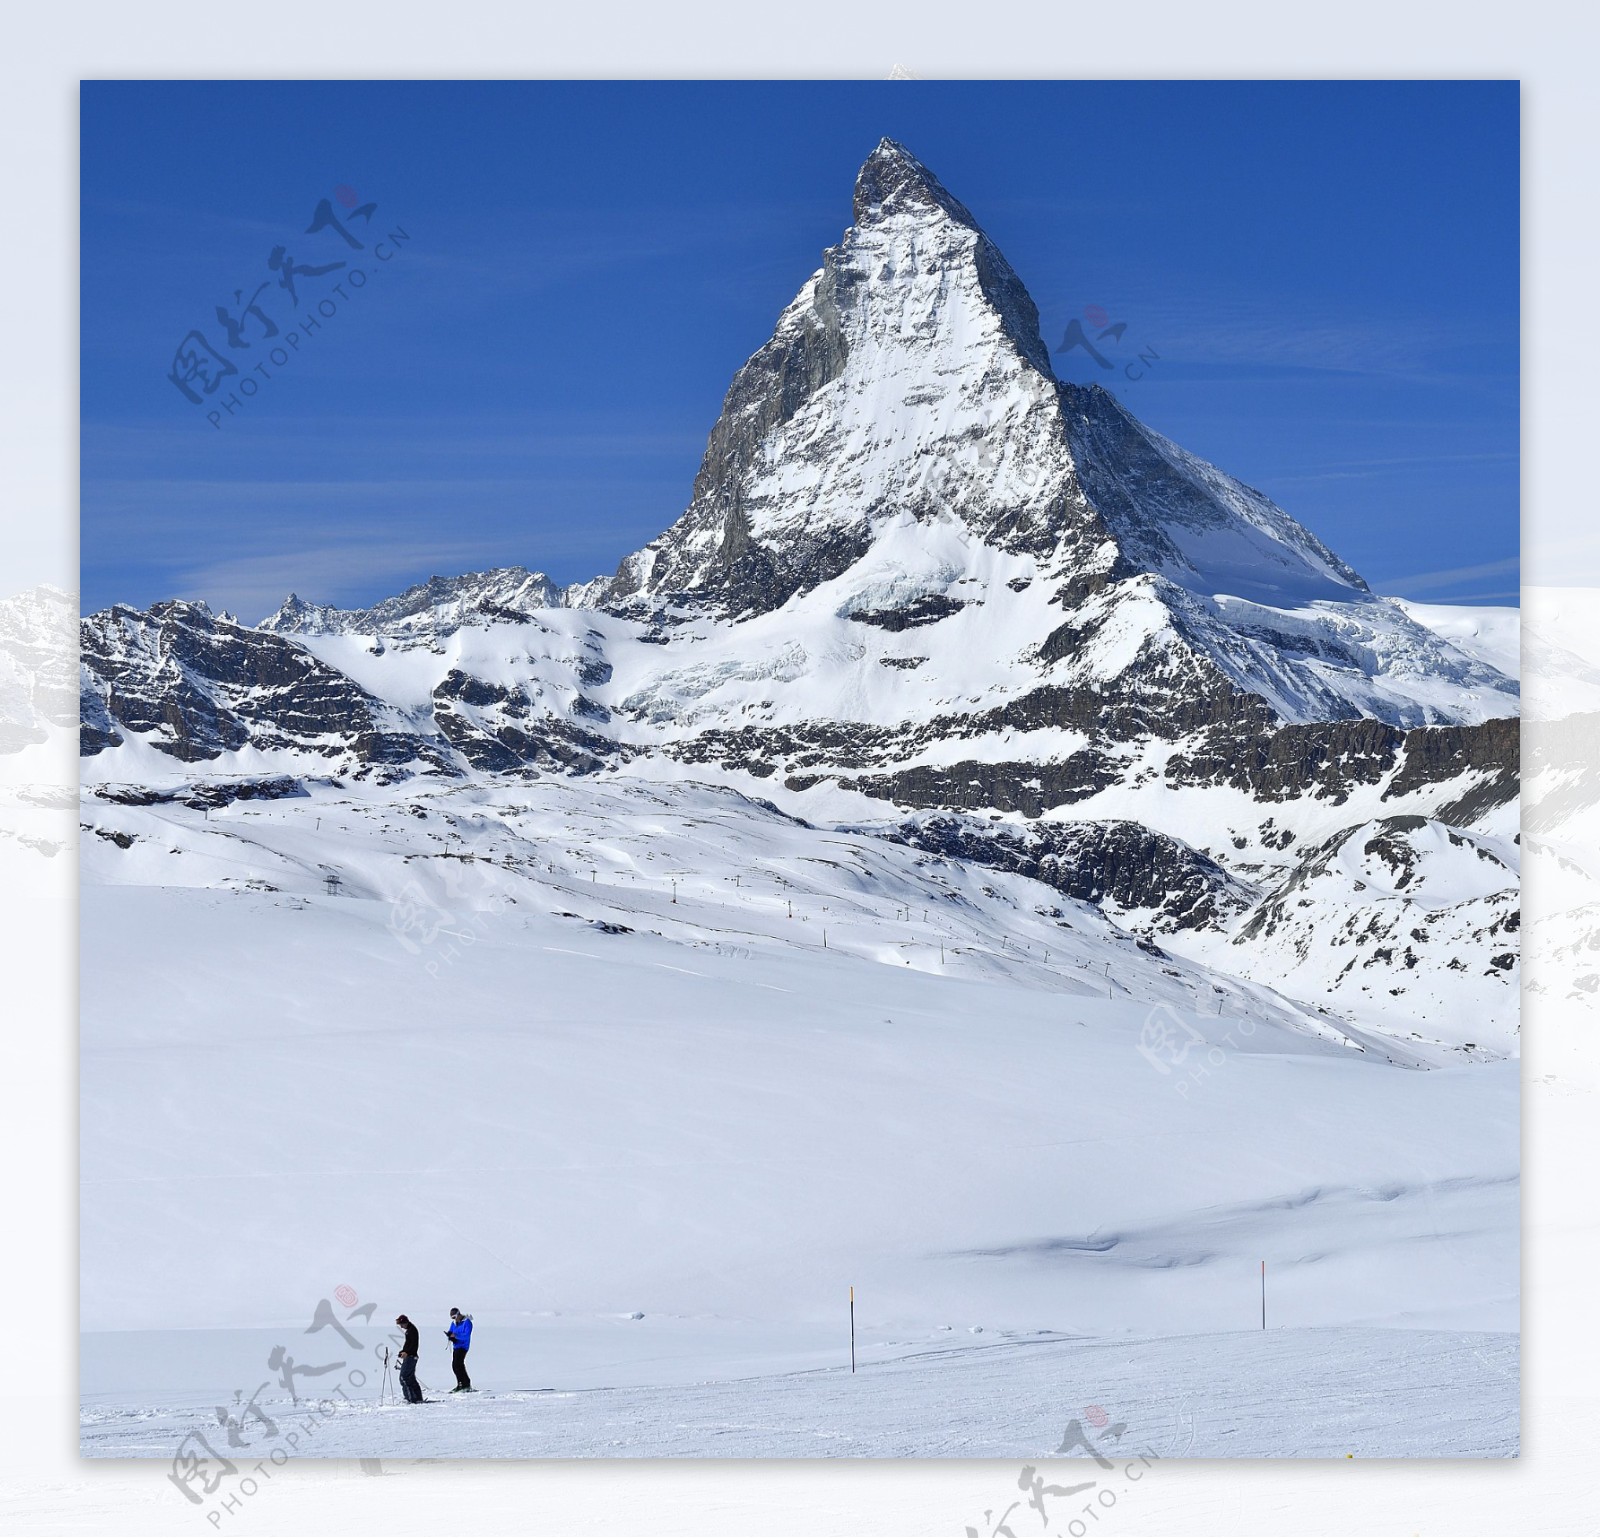 马特洪峰 (Matterhorn) 的攀登难度到底如何? - 知乎